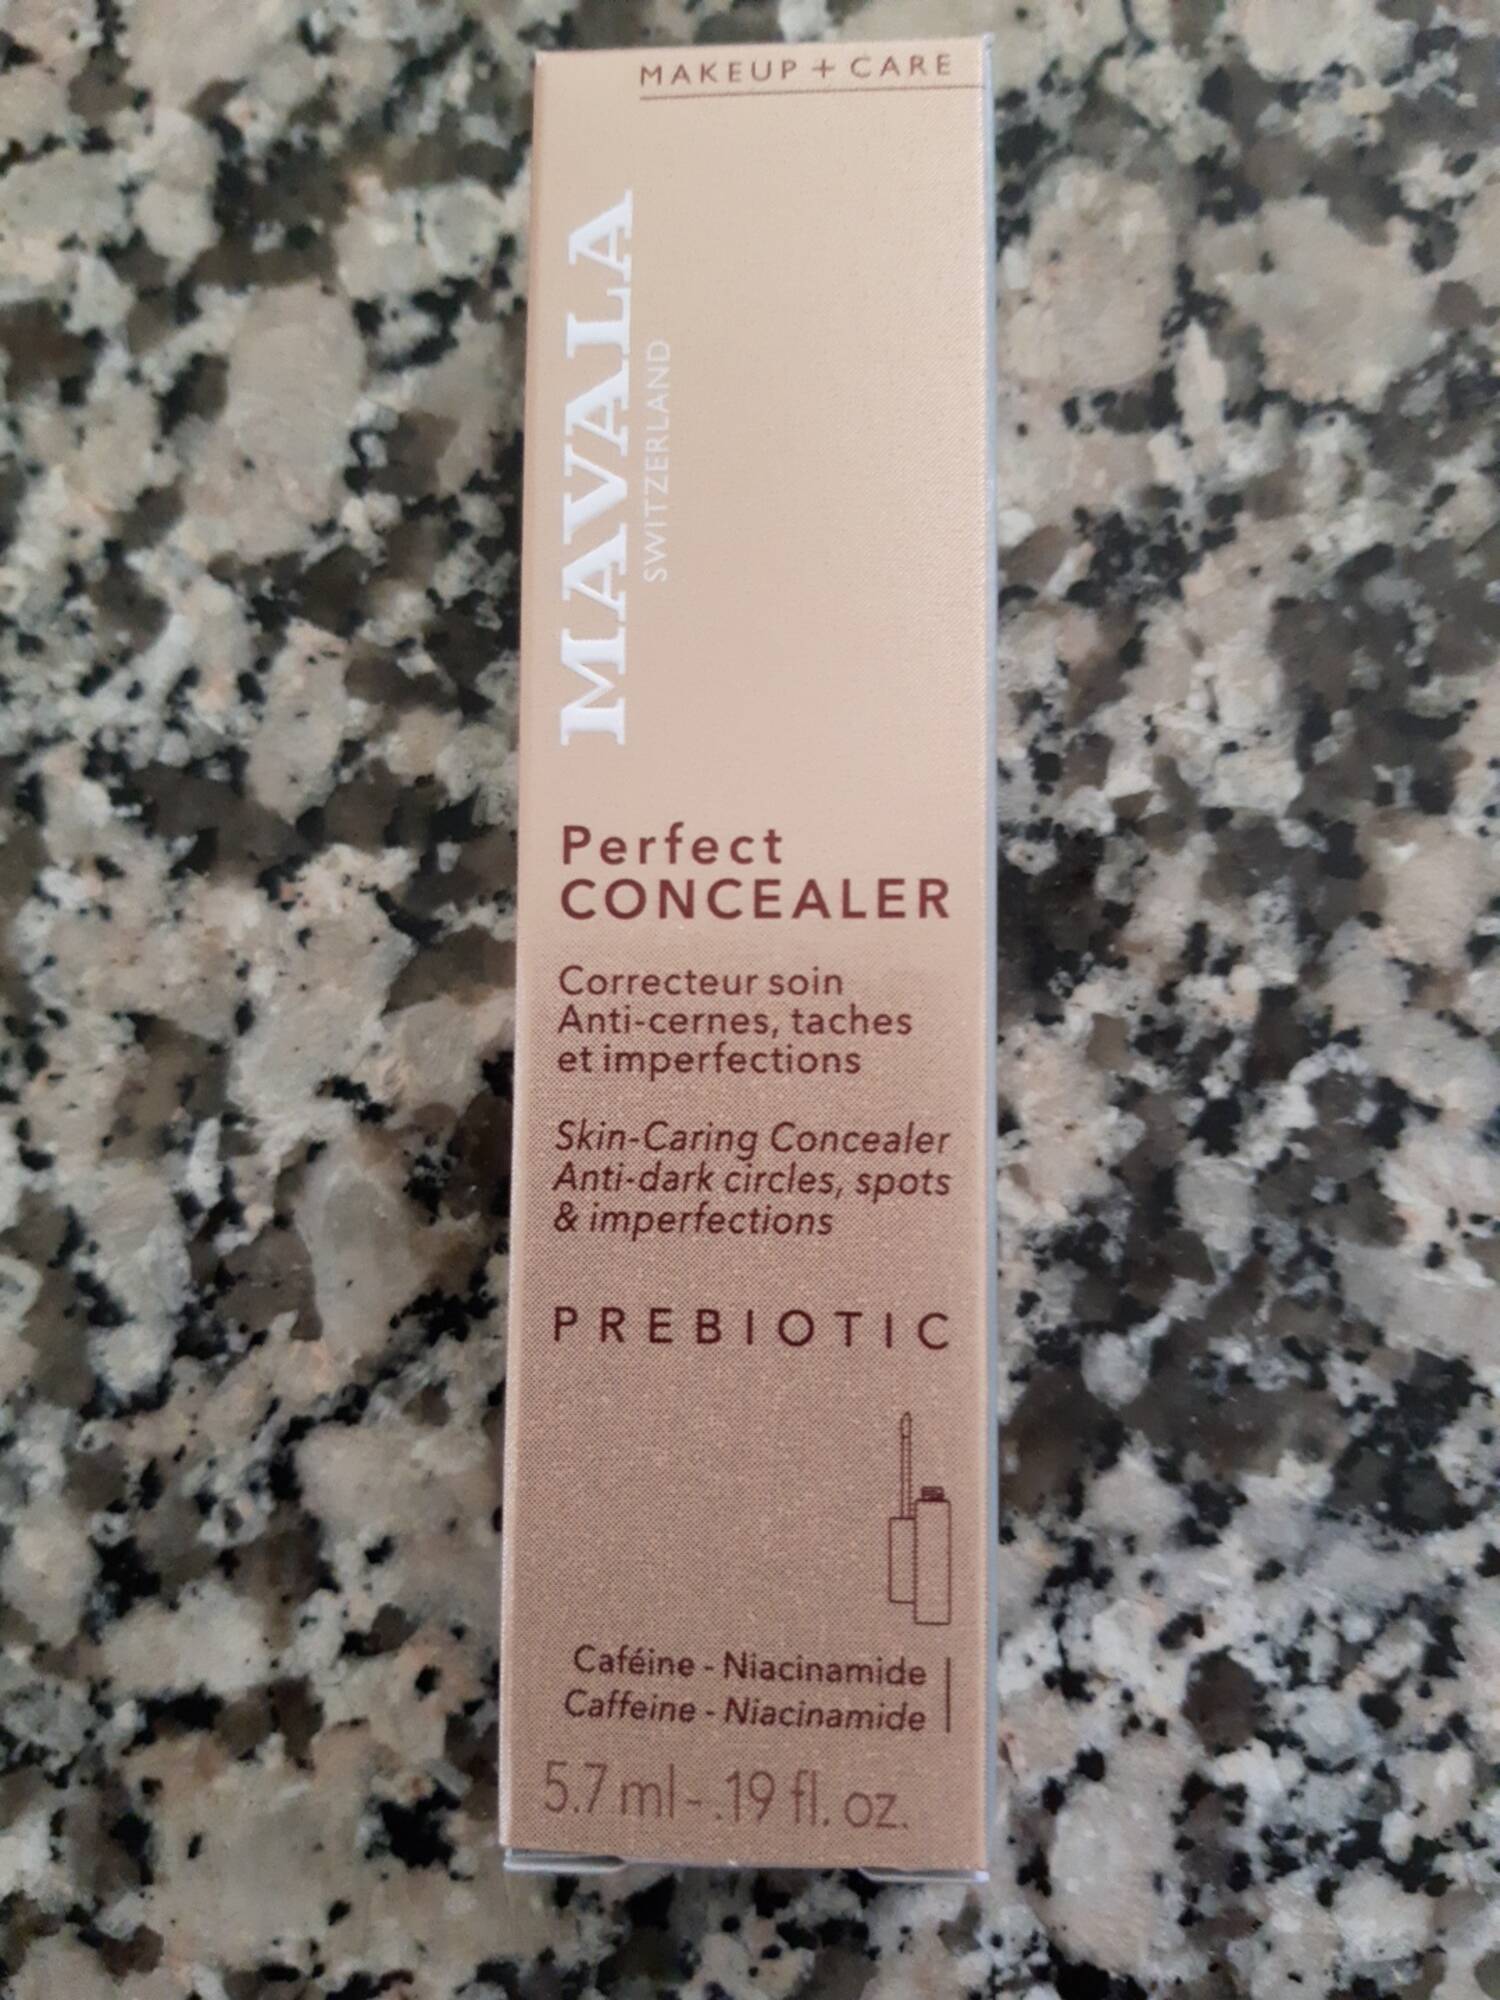 MAVALA - Prebiotic perfect concealer - Correcteur soin anti-cernes